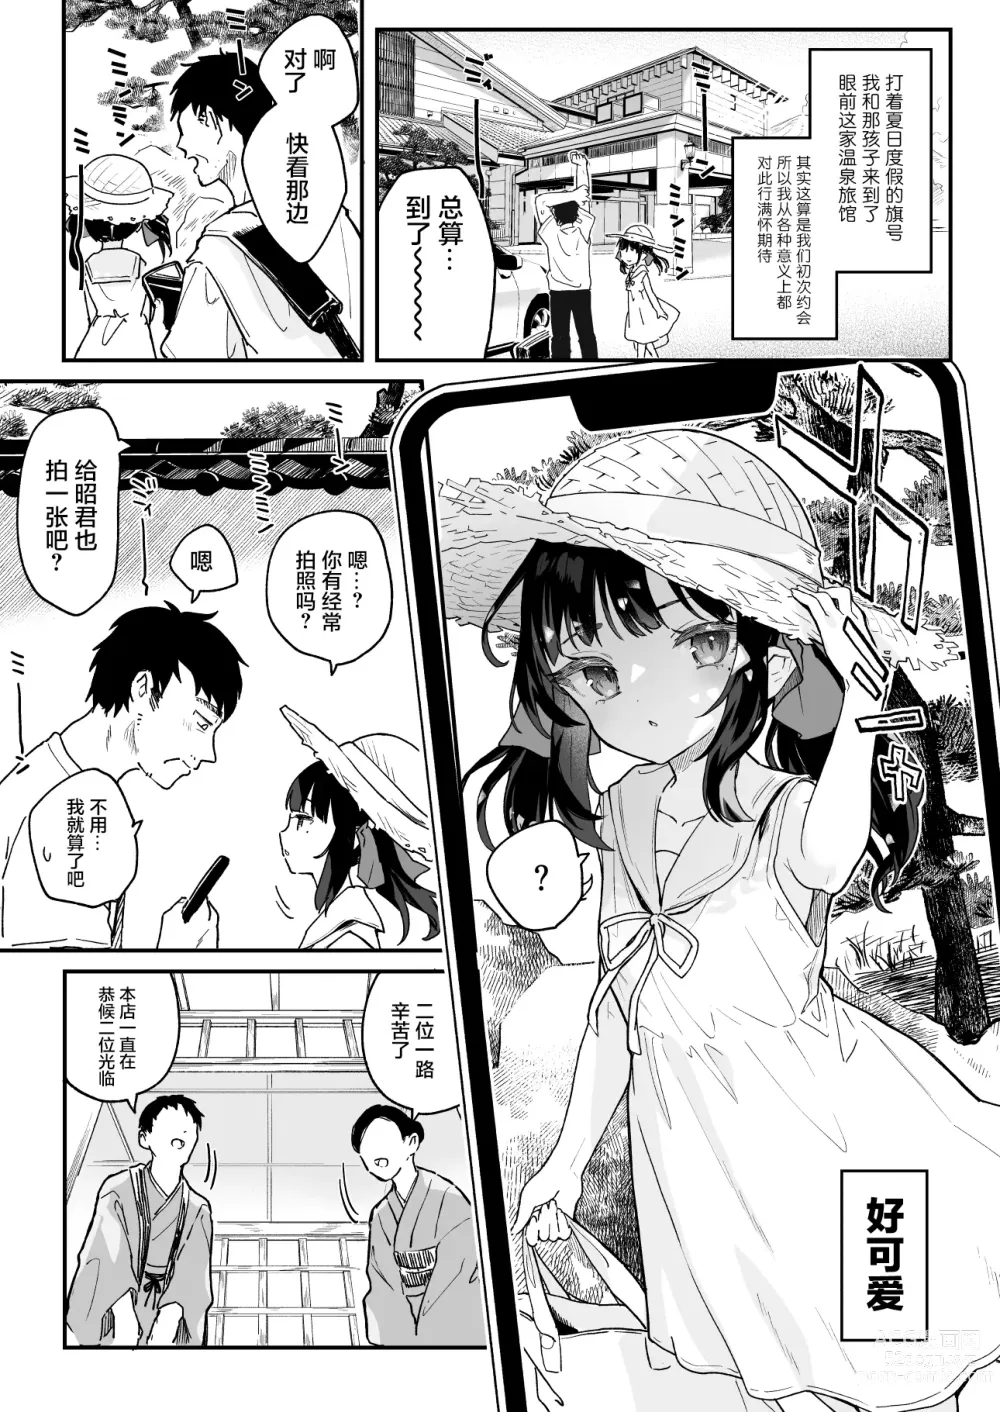 Page 3 of doujinshi 依靠之人